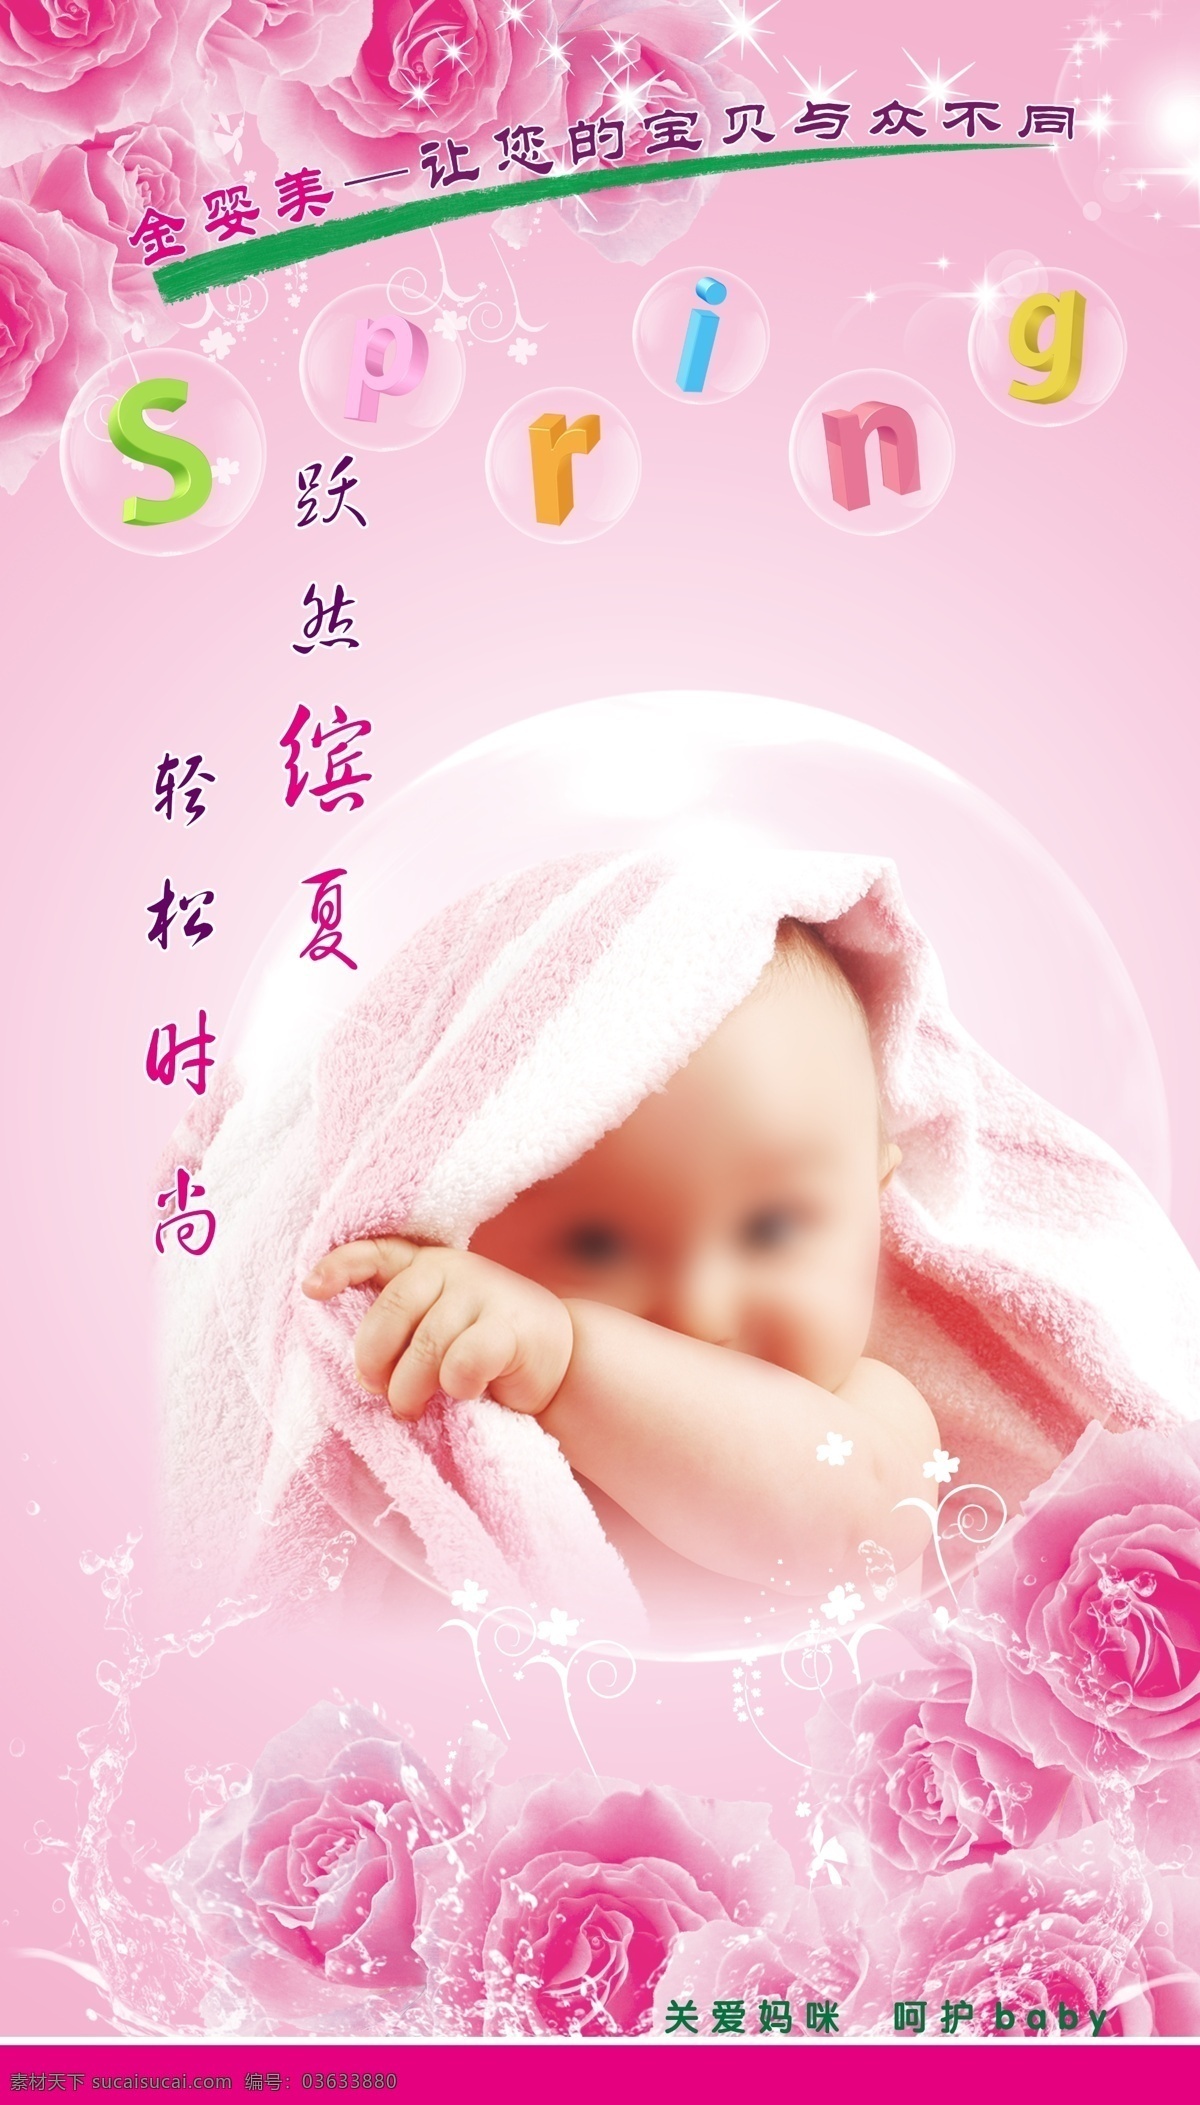 婴儿 展板 宝宝 广告设计模板 玫瑰花 母婴 母婴护理 沐浴 气泡 水滴 婴儿展板 游泳 展板模板 源文件 其他展板设计